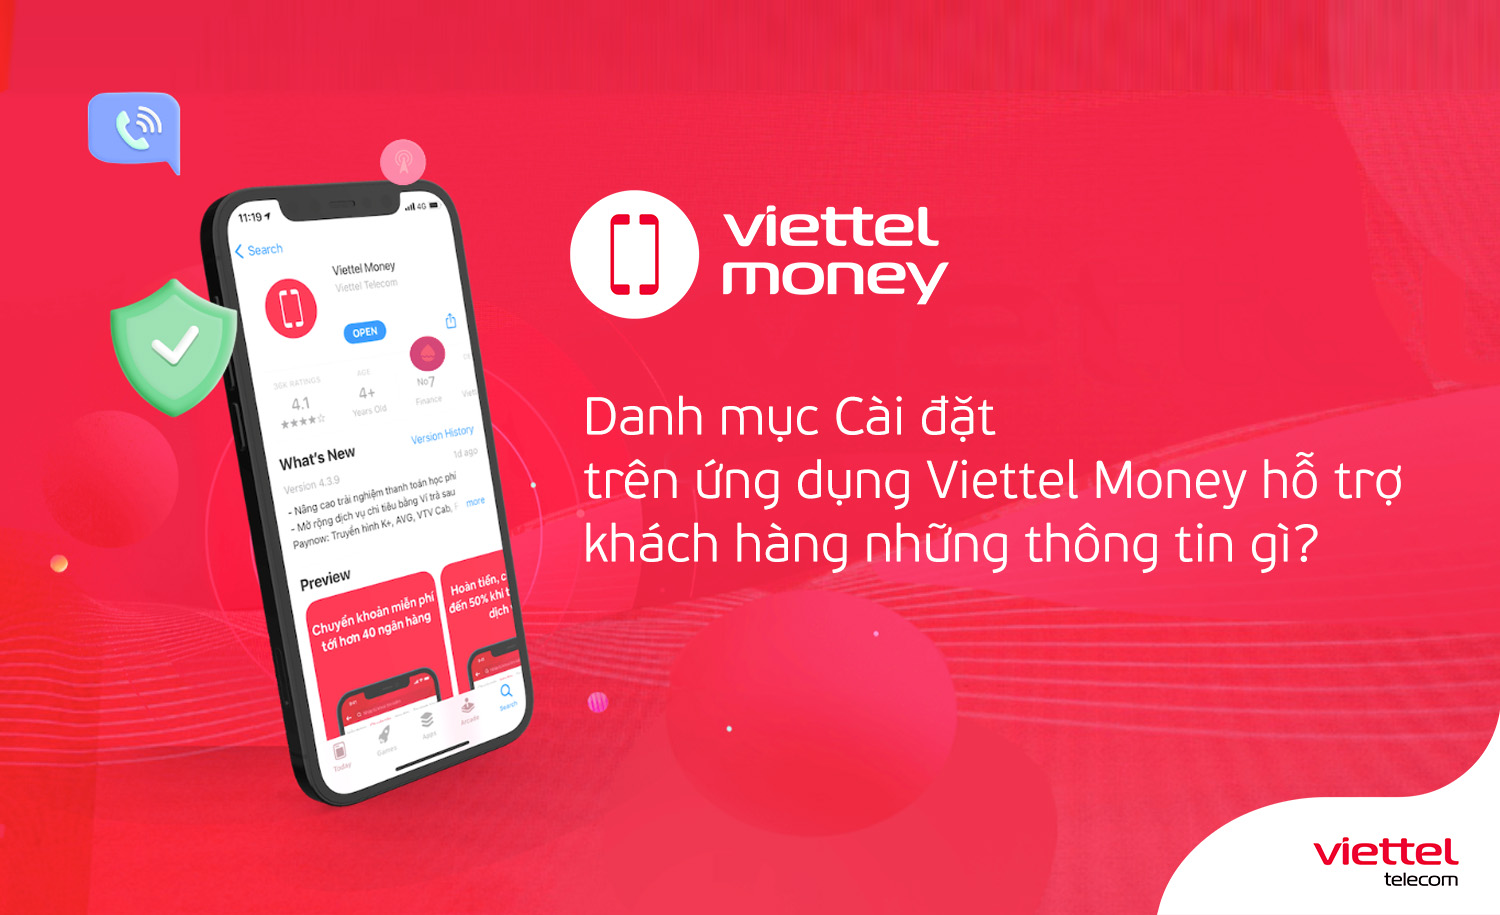 Danh mục Cài đặt trên ứng dụng Viettel Money hỗ trợ khách hàng những thông tin gì?